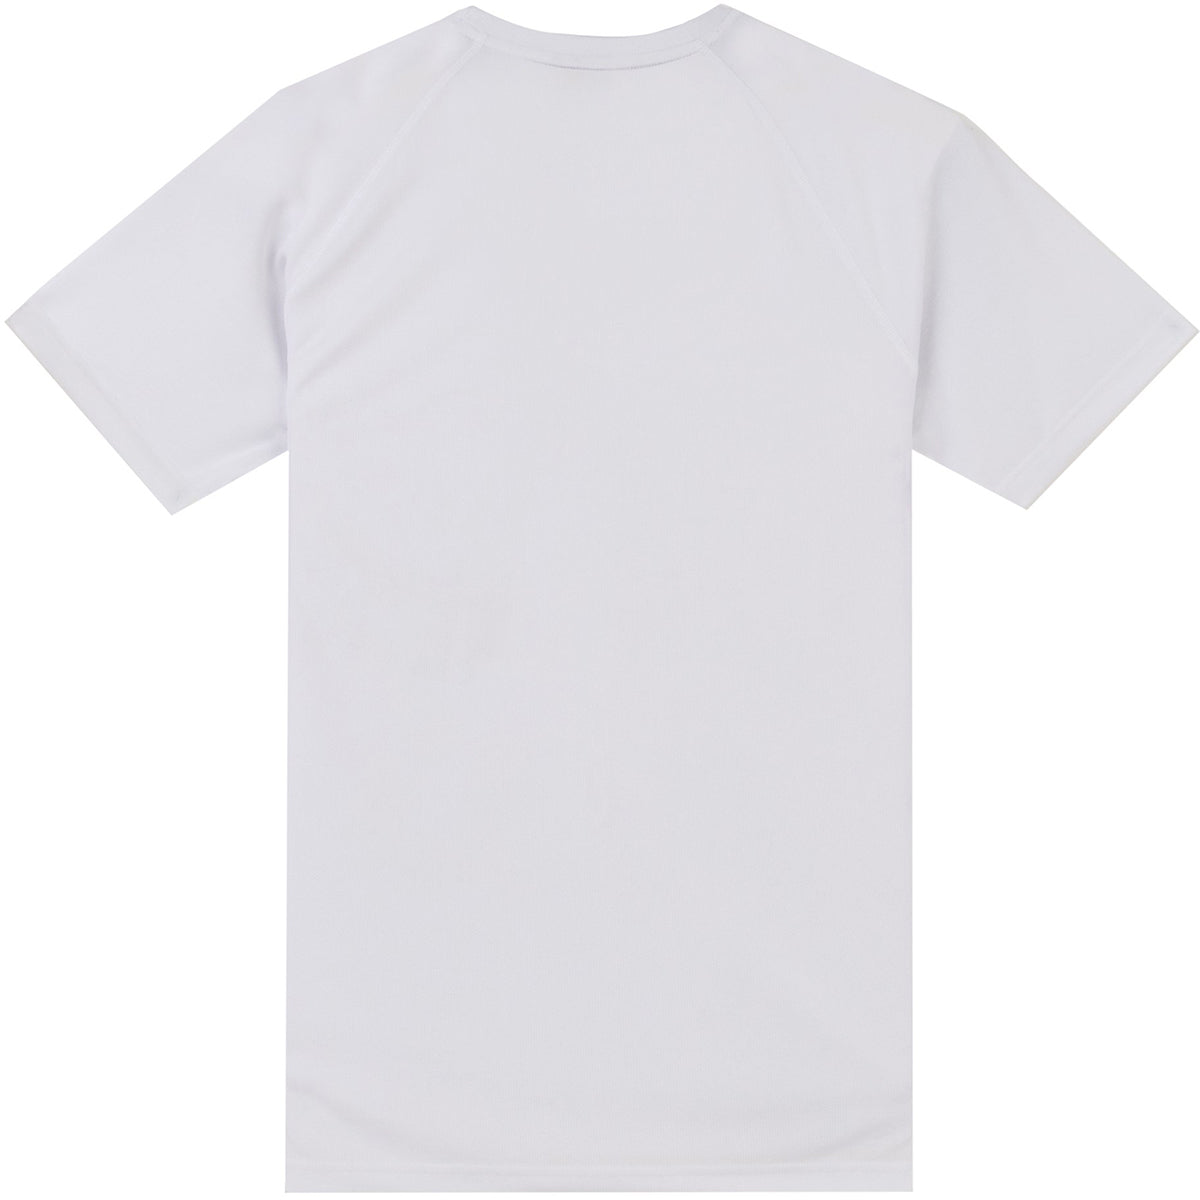 Tatami Fightwear Dry Fit T-Shirt - White Tatami Fightwear